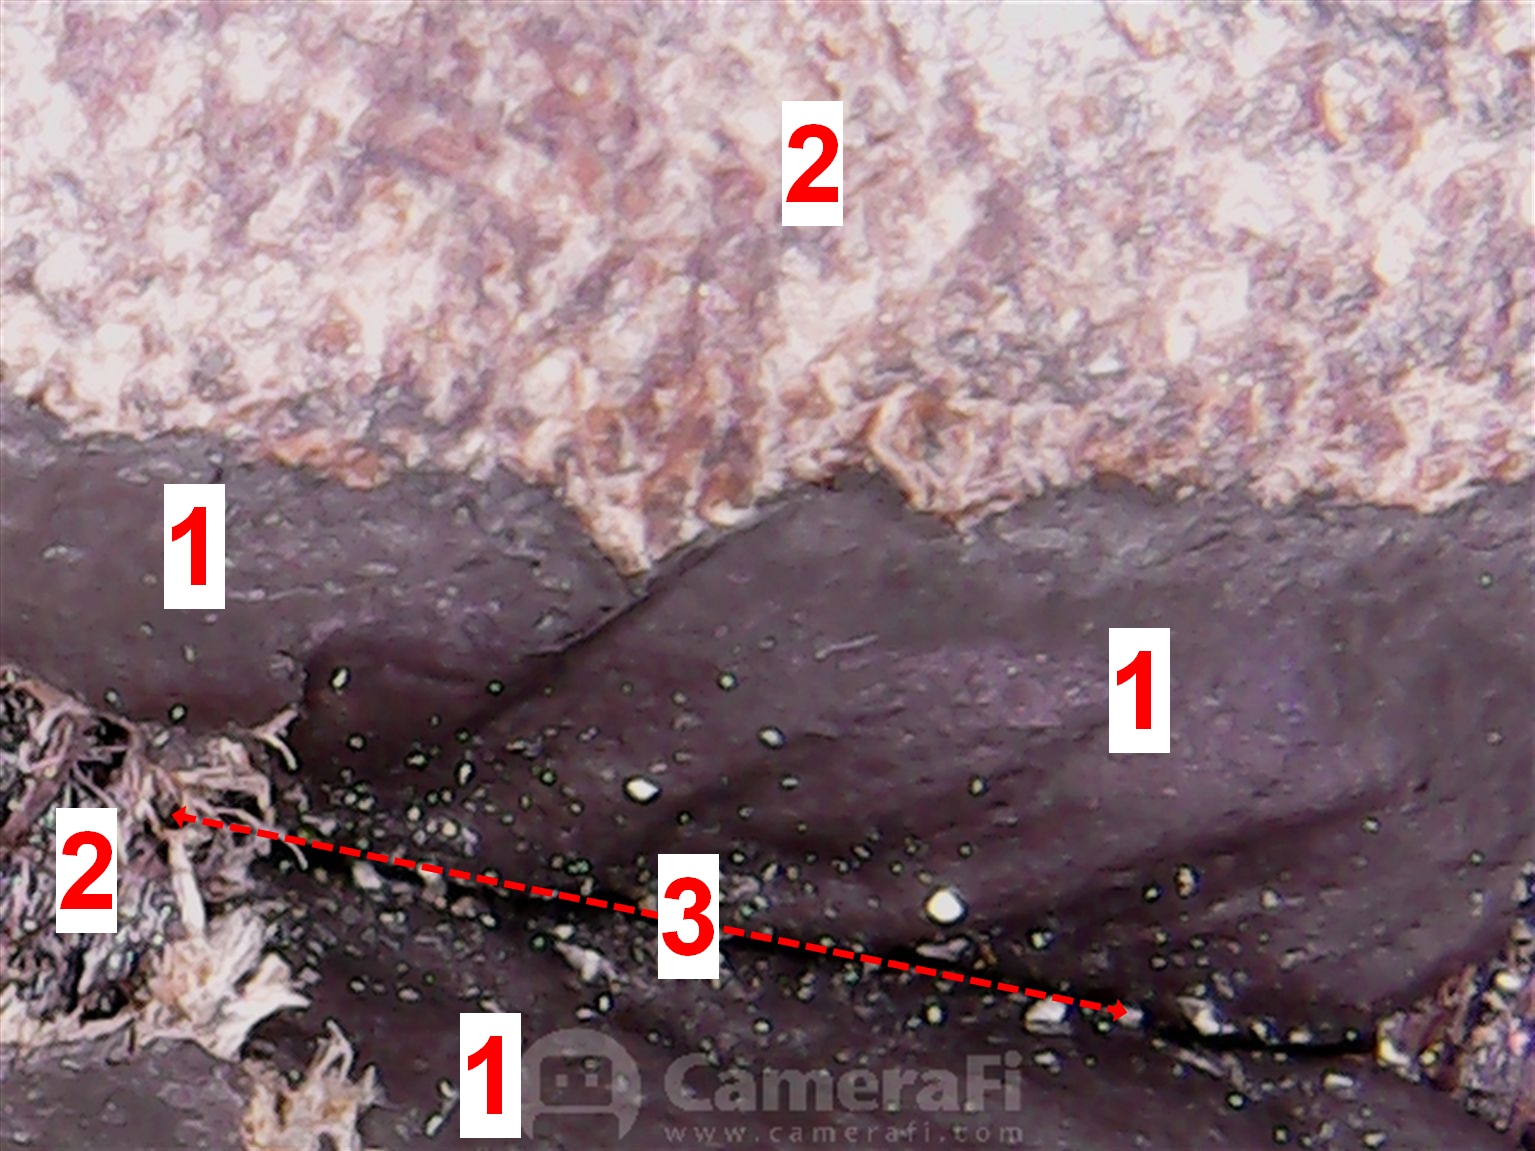 Schadensbild eines Ledersofas unter ca. 50-facher Vergrößerung